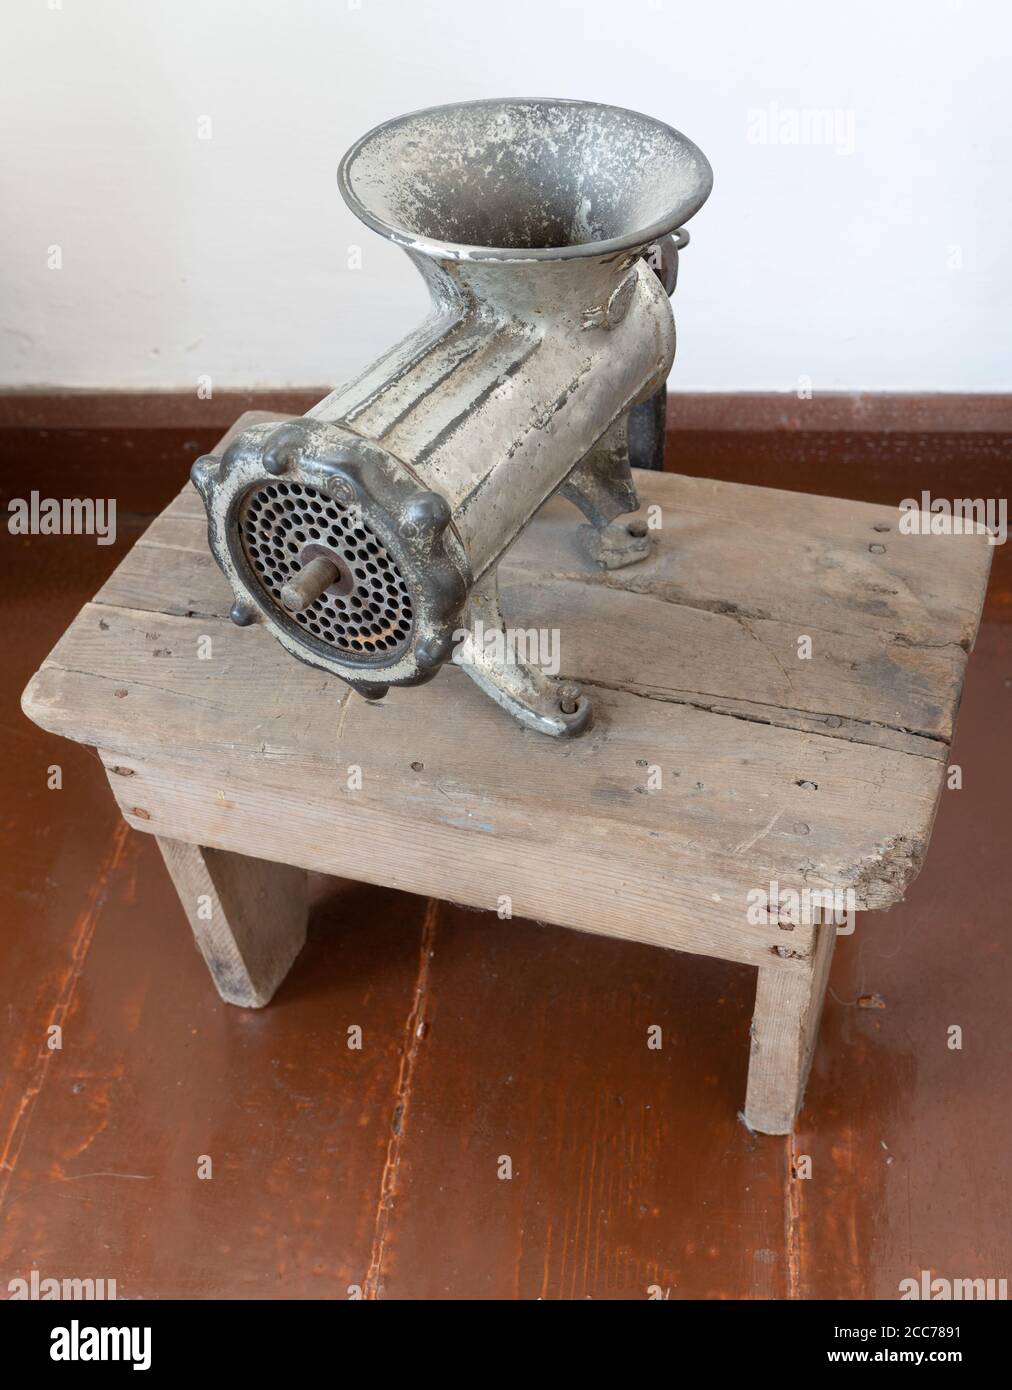 Un ancien moulin à viande manuel sur une table en bois Photo Stock - Alamy